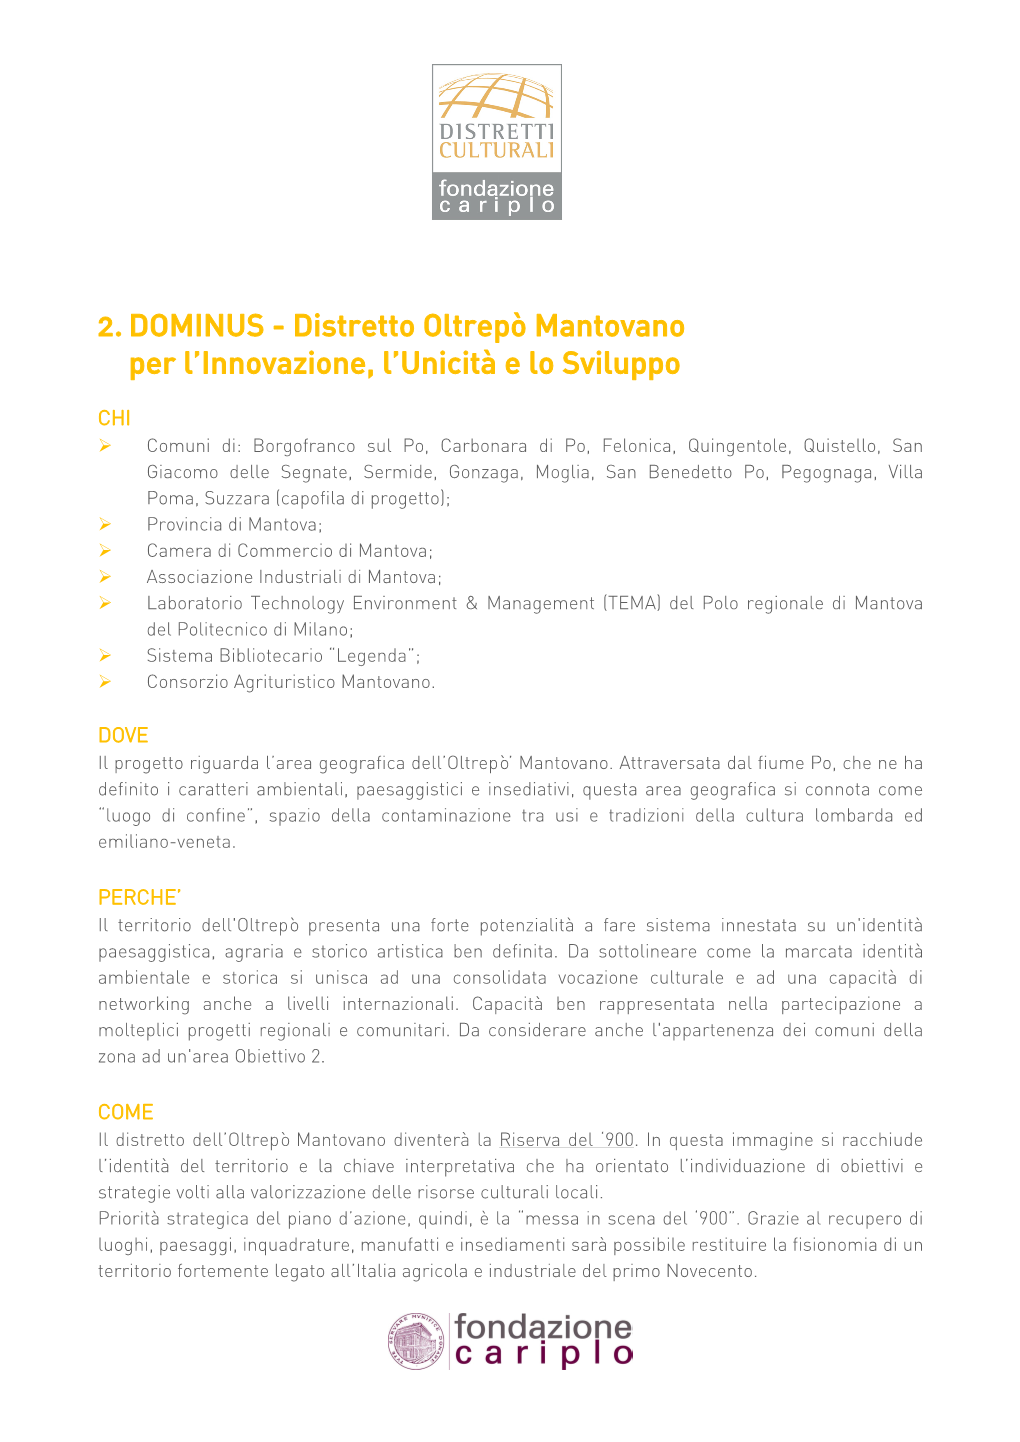 2. DOMINUS - Distretto Oltrepò Mantovano Per L’Innovazione, L’Unicità E Lo Sviluppo